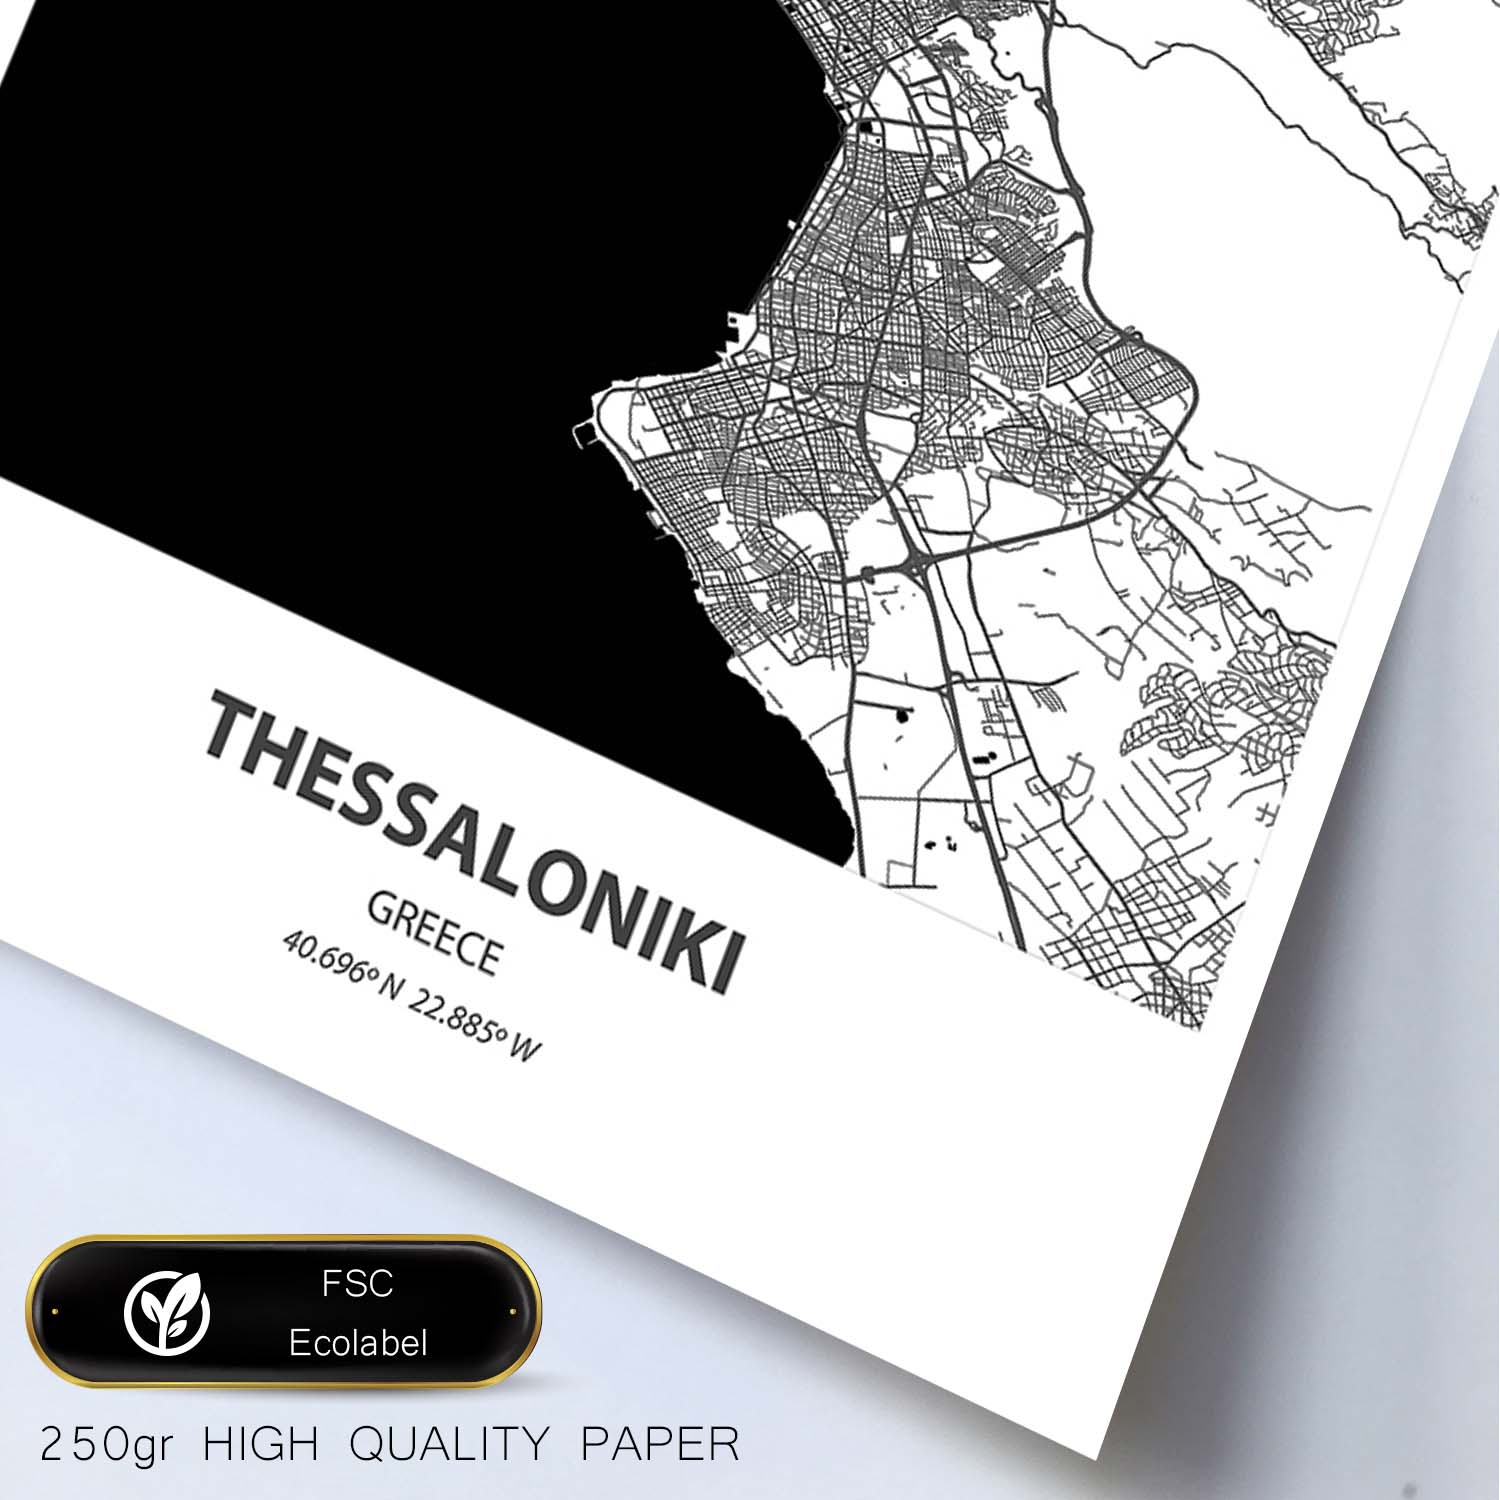 Poster con mapa de Thessaloniki - Grecia. Láminas de ciudades de Europa con mares y ríos en color negro.-Artwork-Nacnic-Nacnic Estudio SL